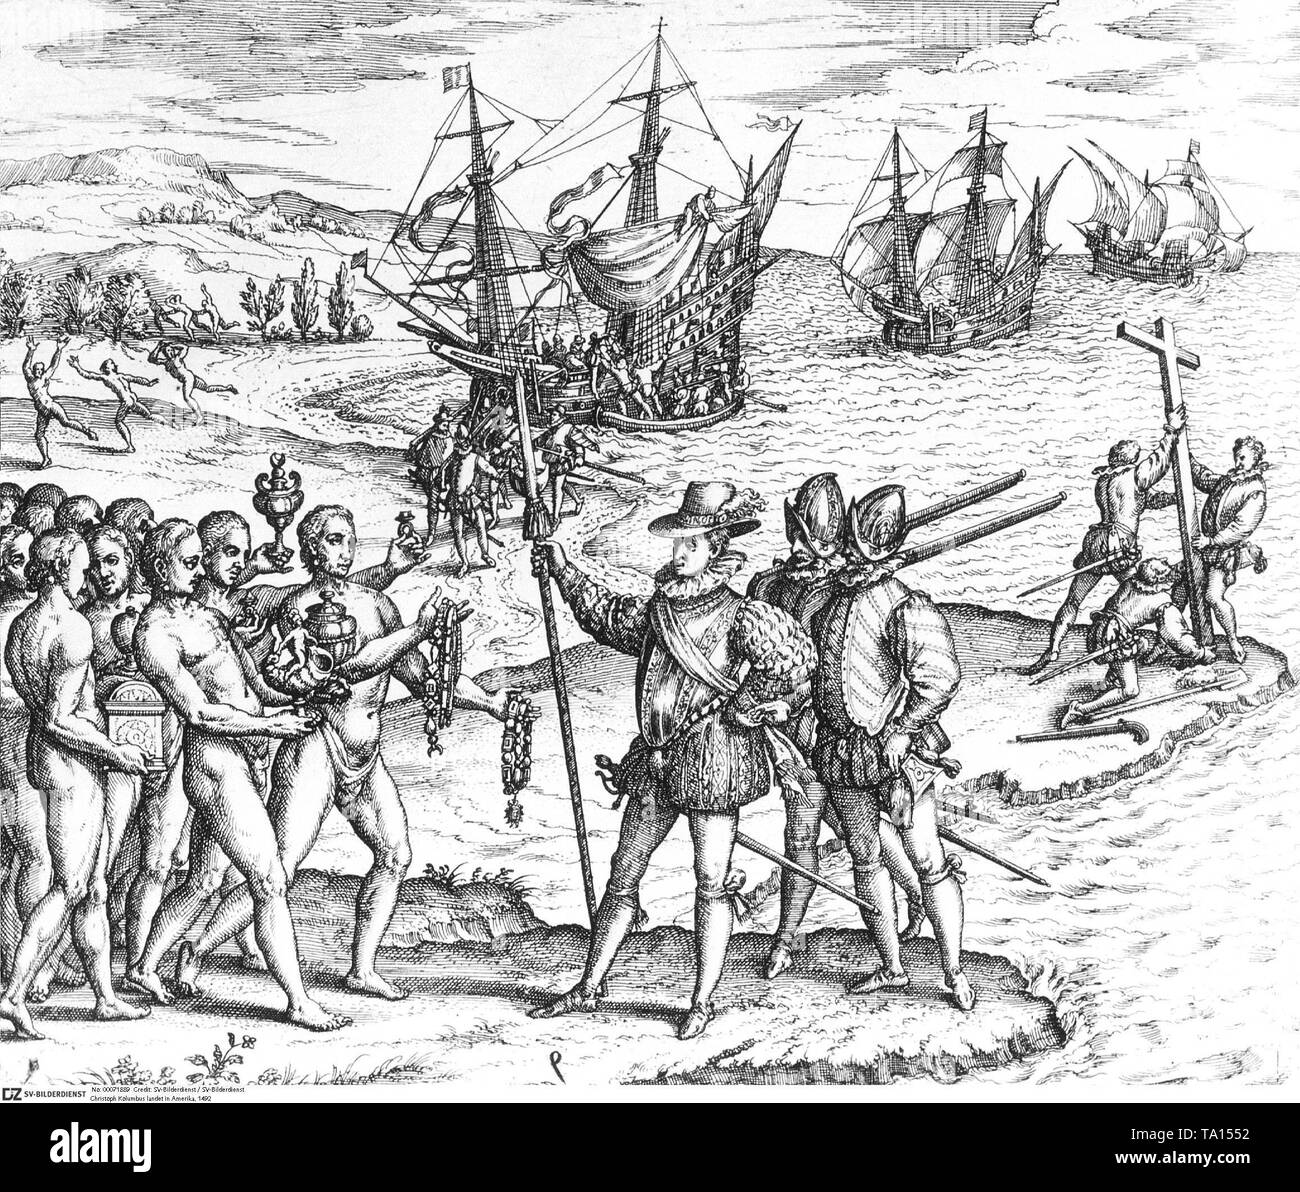 Christoph Kolumbus in den Besitz der Insel Hispaniola (das heutige Haiti) für die spanische Krone. Das Bild zeigt, wie die Spanier versuchen Kontakt mit den Indianern zu etablieren. Stockfoto